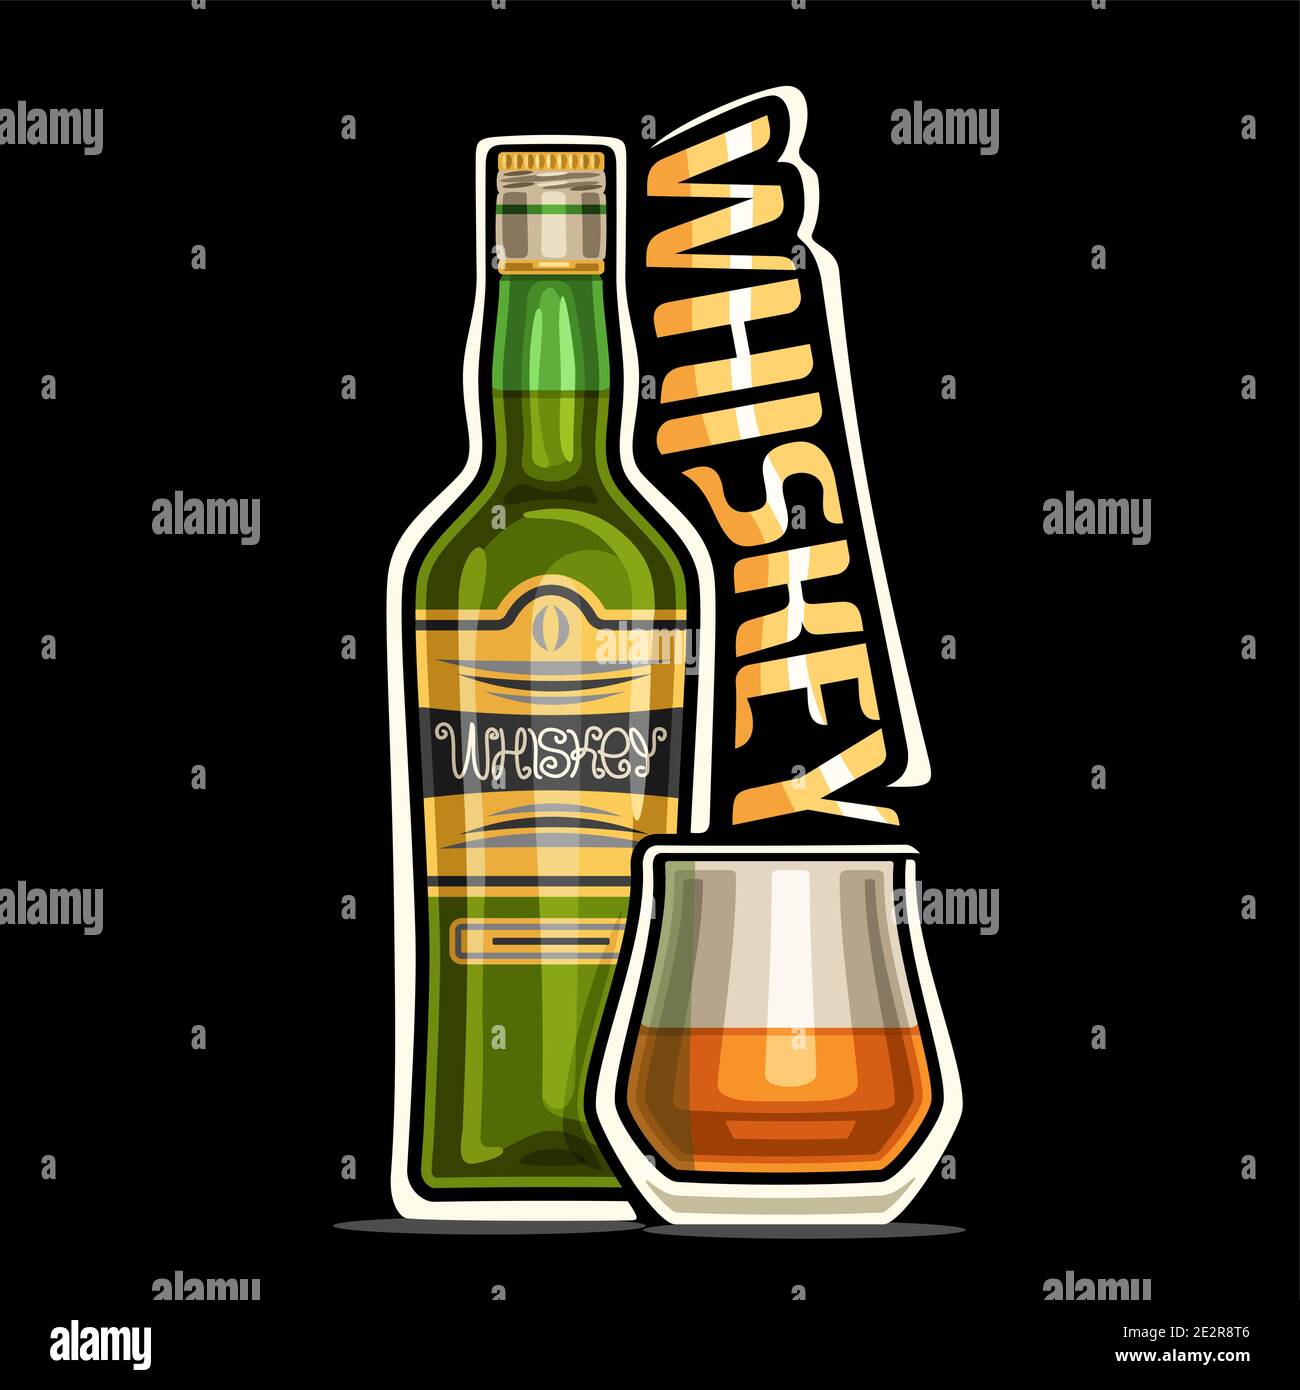 Vektor-Logo für Whiskey, Umriss Illustration der grünen Flasche mit dekorativem Etikett und halb Vollglas mit Whiskey, Plakette mit einzigartigem Design lette Stock Vektor